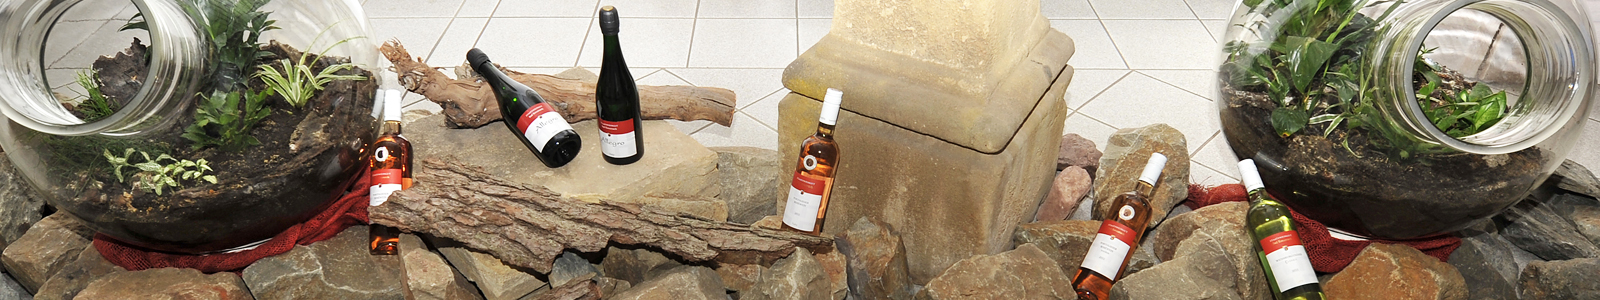 Weinflaschen zwischen Steinen  und Holz dekoriert ©Feuerbach